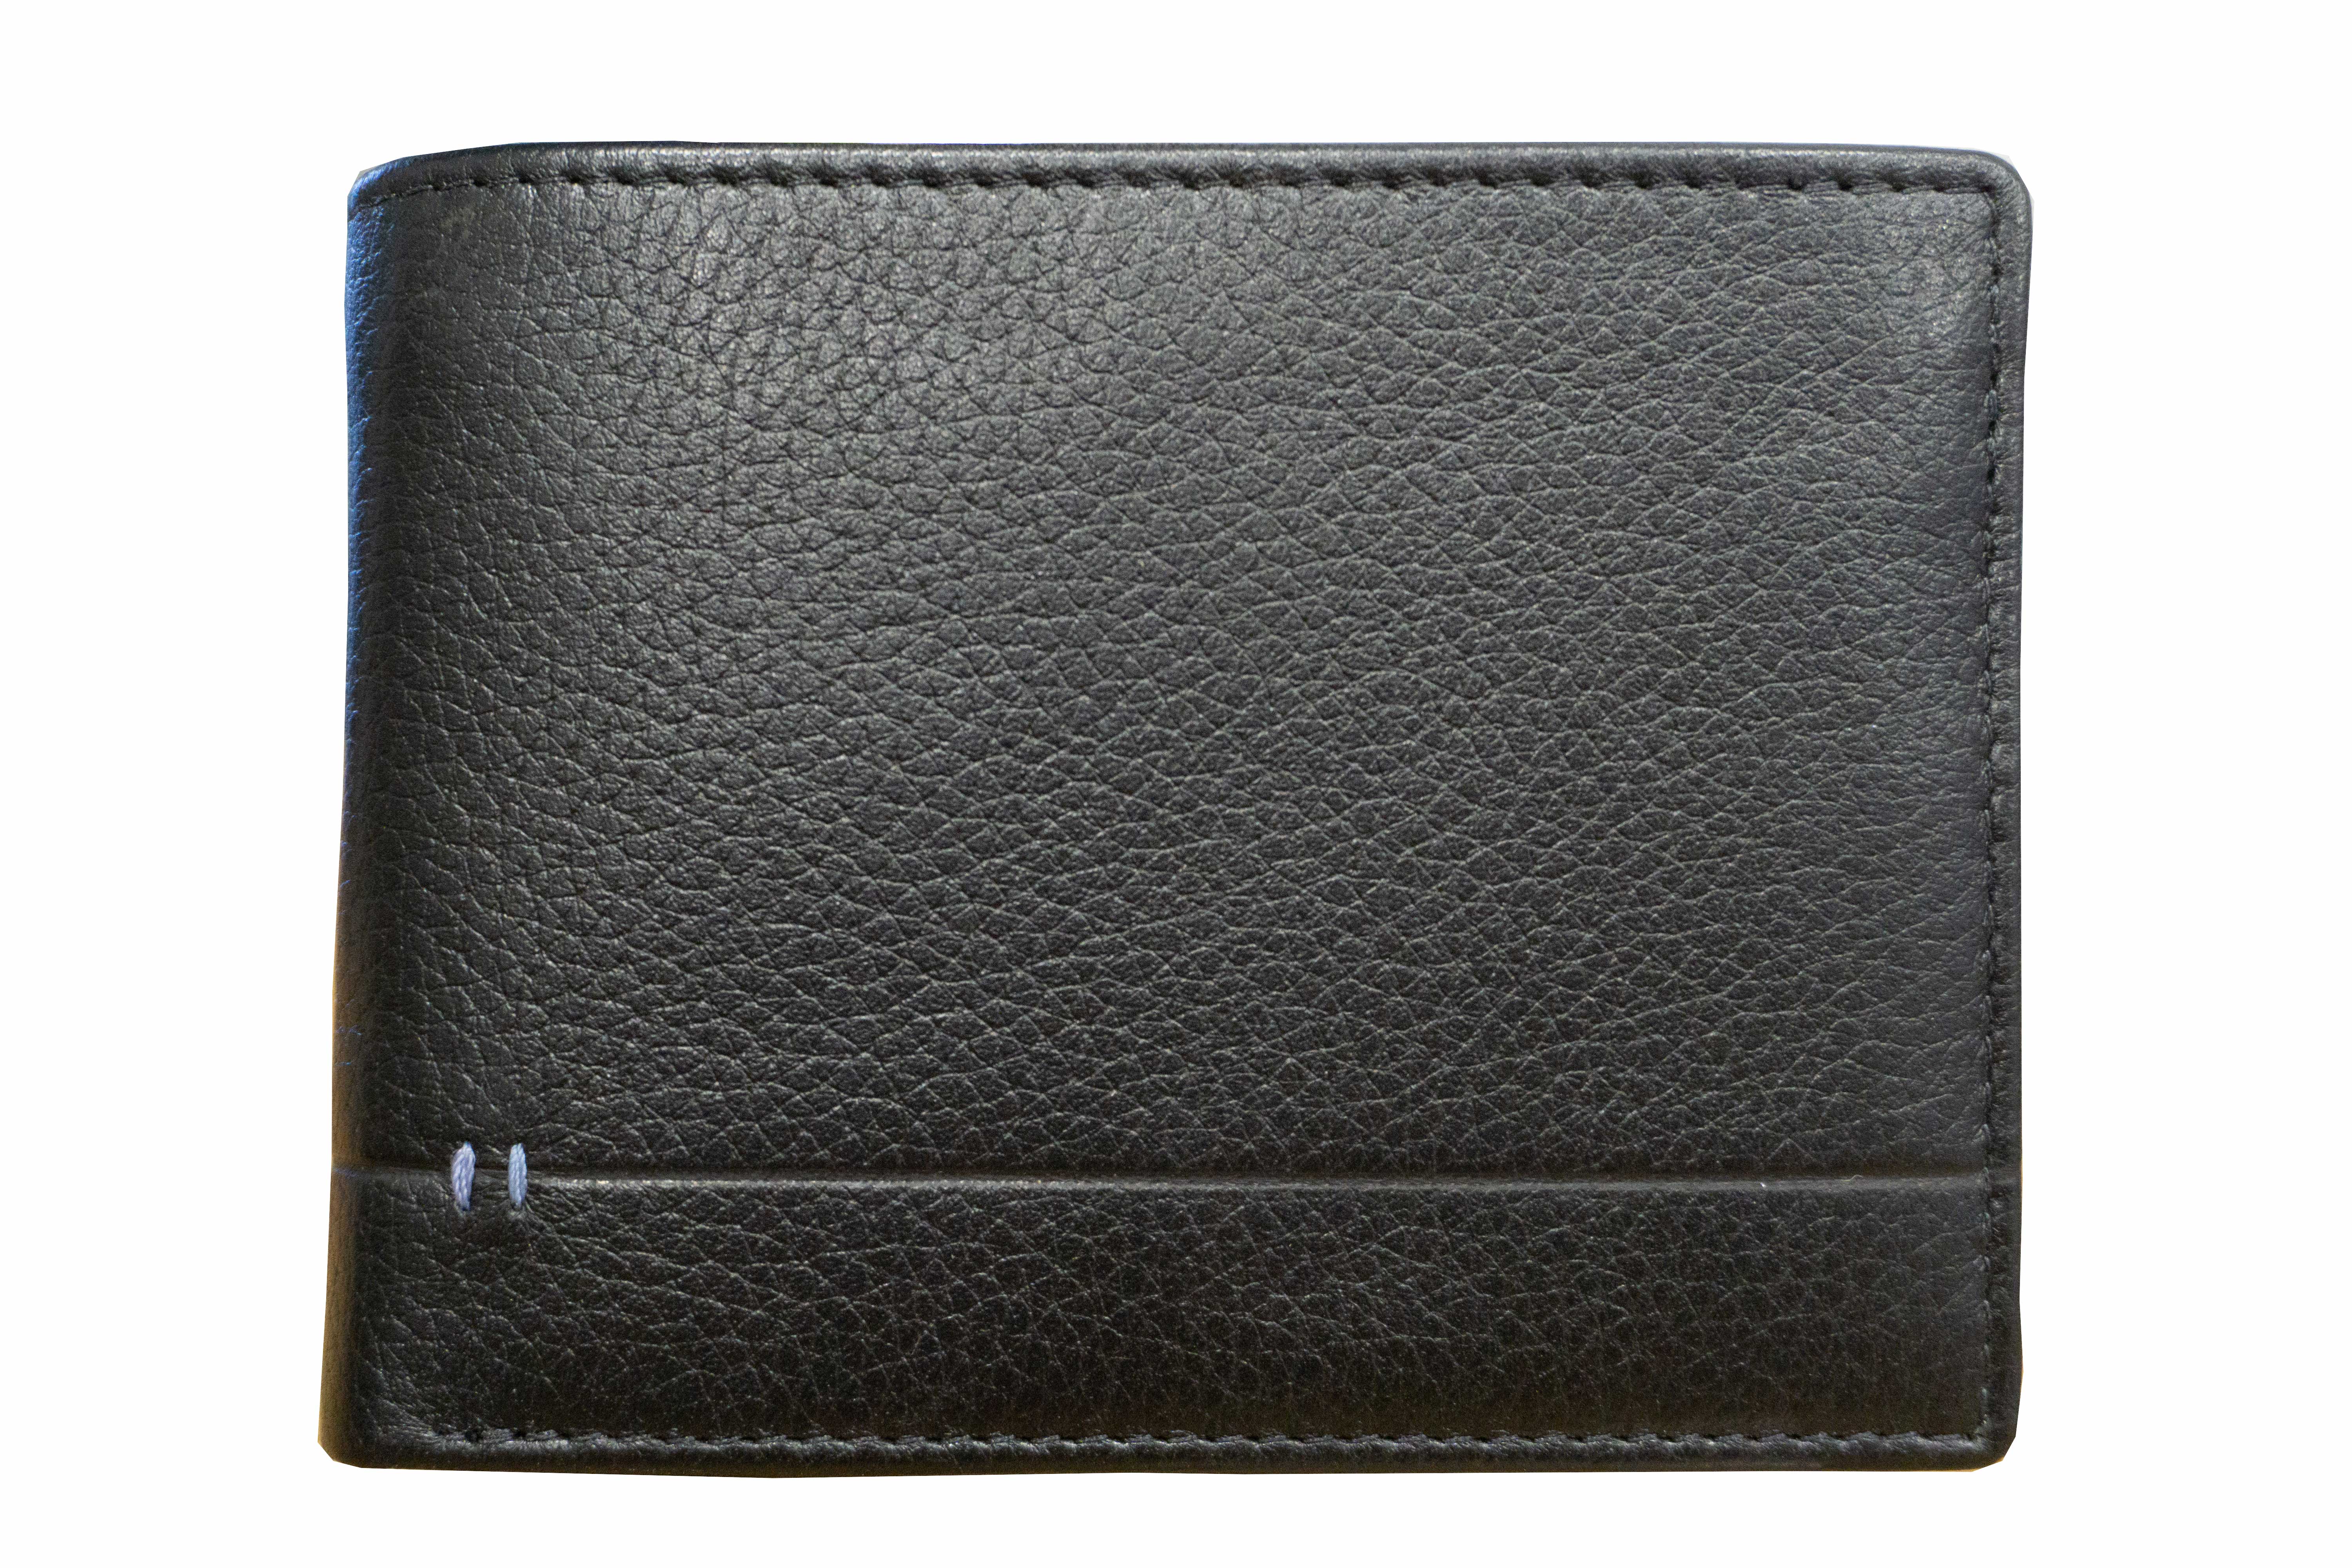 Scheintasche Geldbörse Querformat feinstes Büffelleder in schwarz mit RFID-Schutz - K-124-60